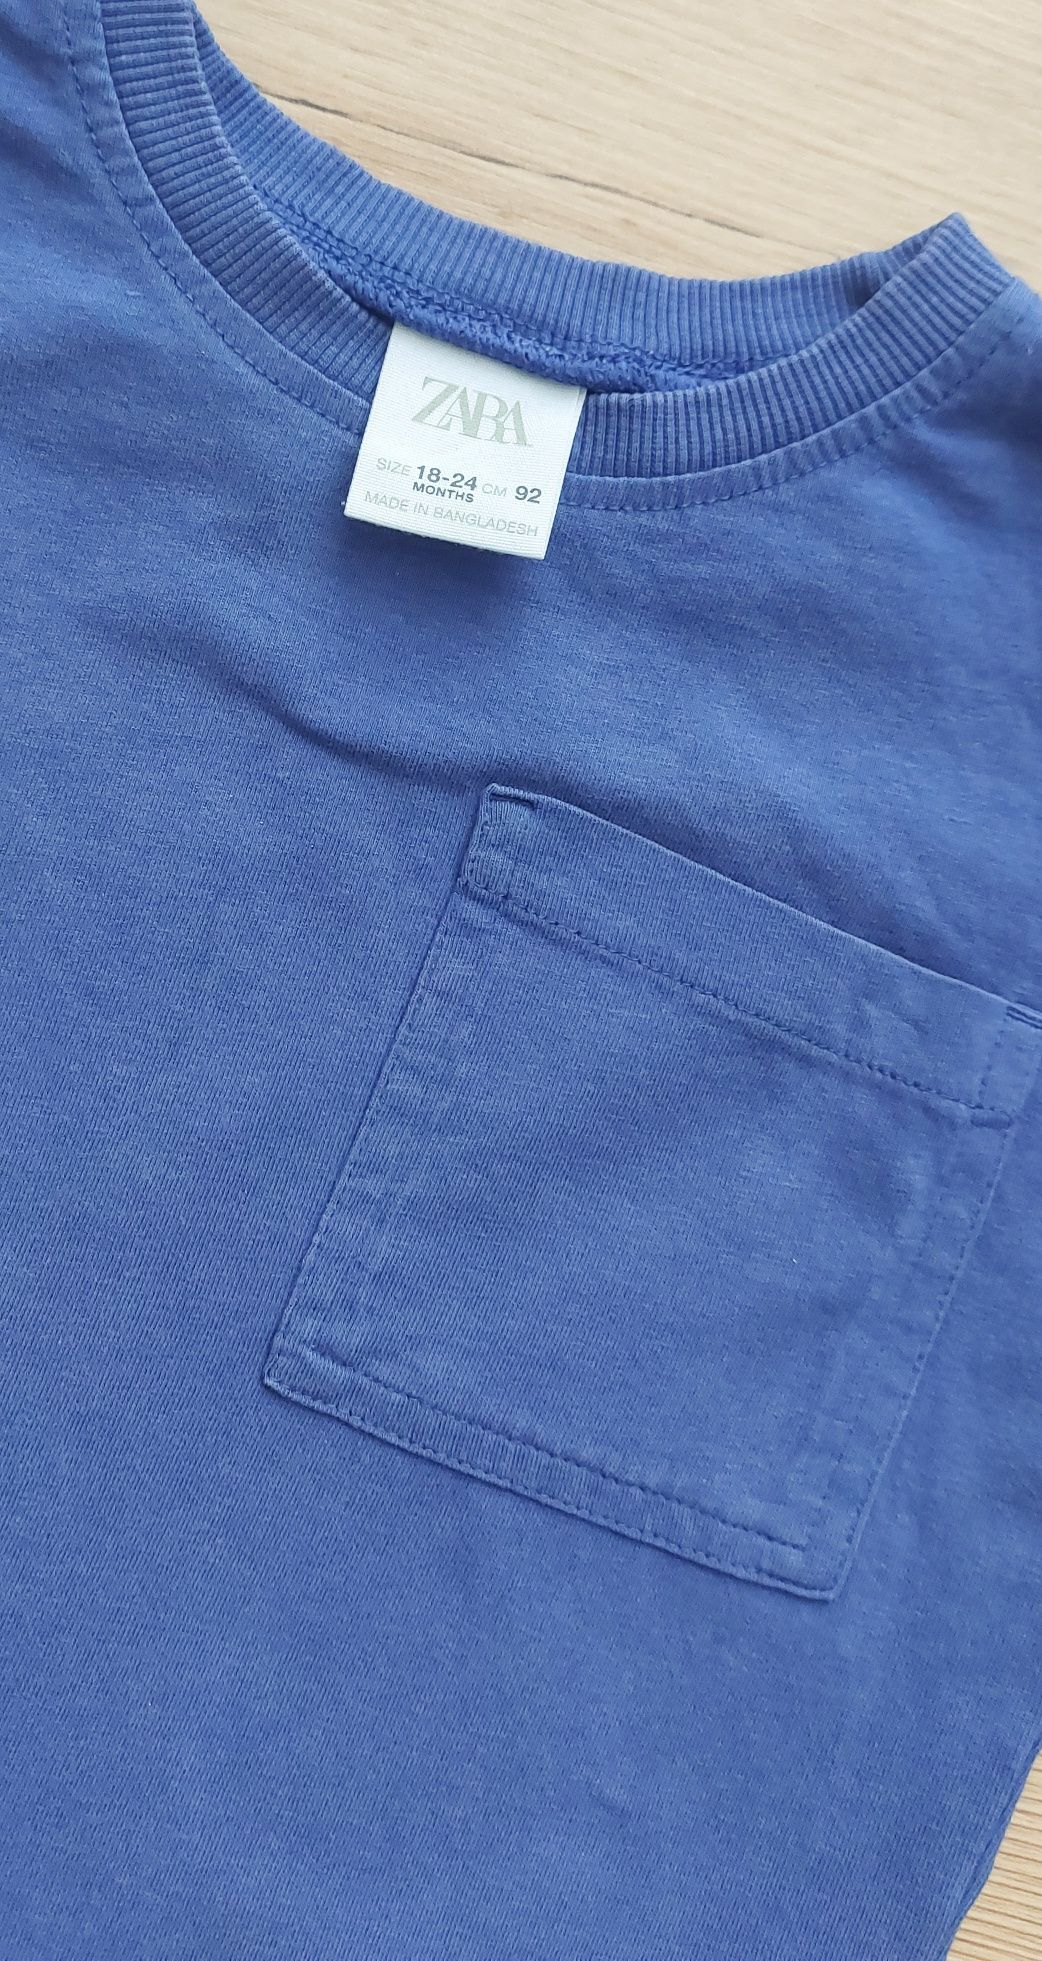 Koszulka bluzka roz 92 Zara niebieska t-shirt kr rękaw